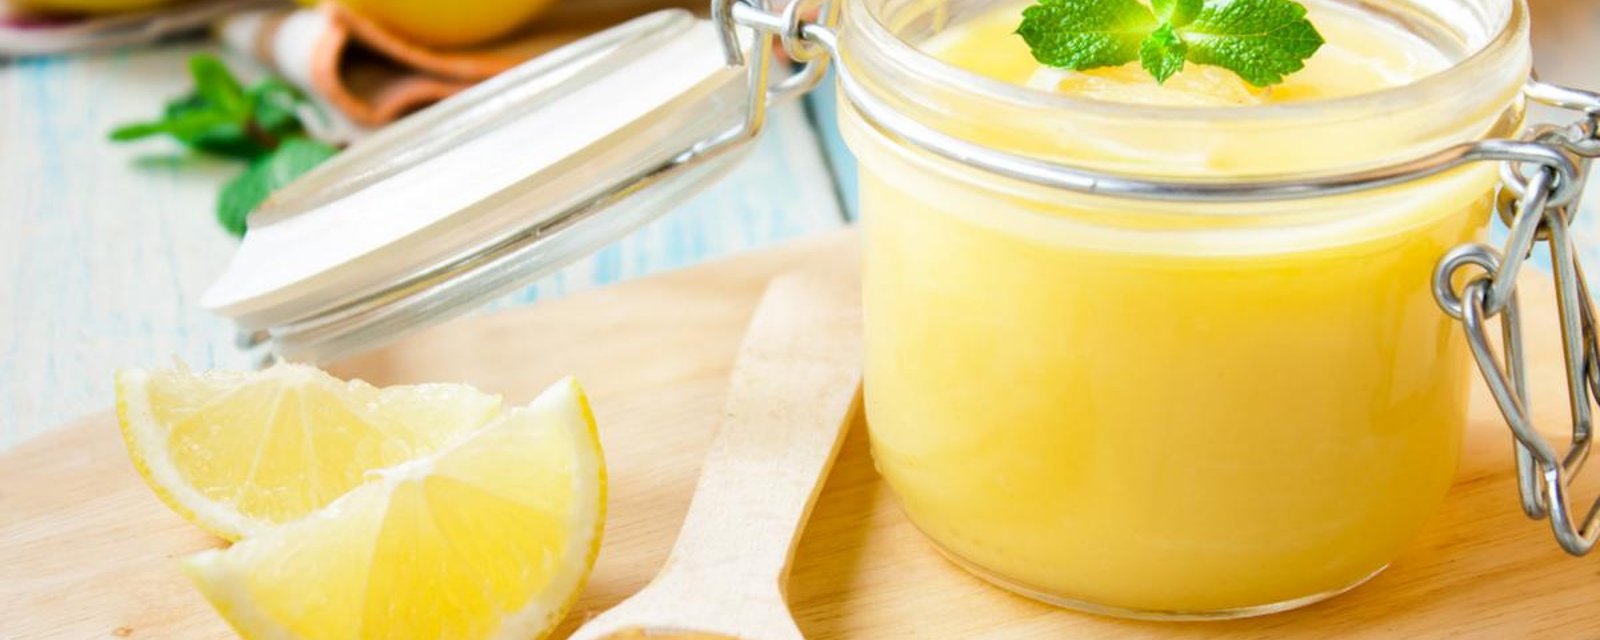 La Lemon Curd: une crème au citron